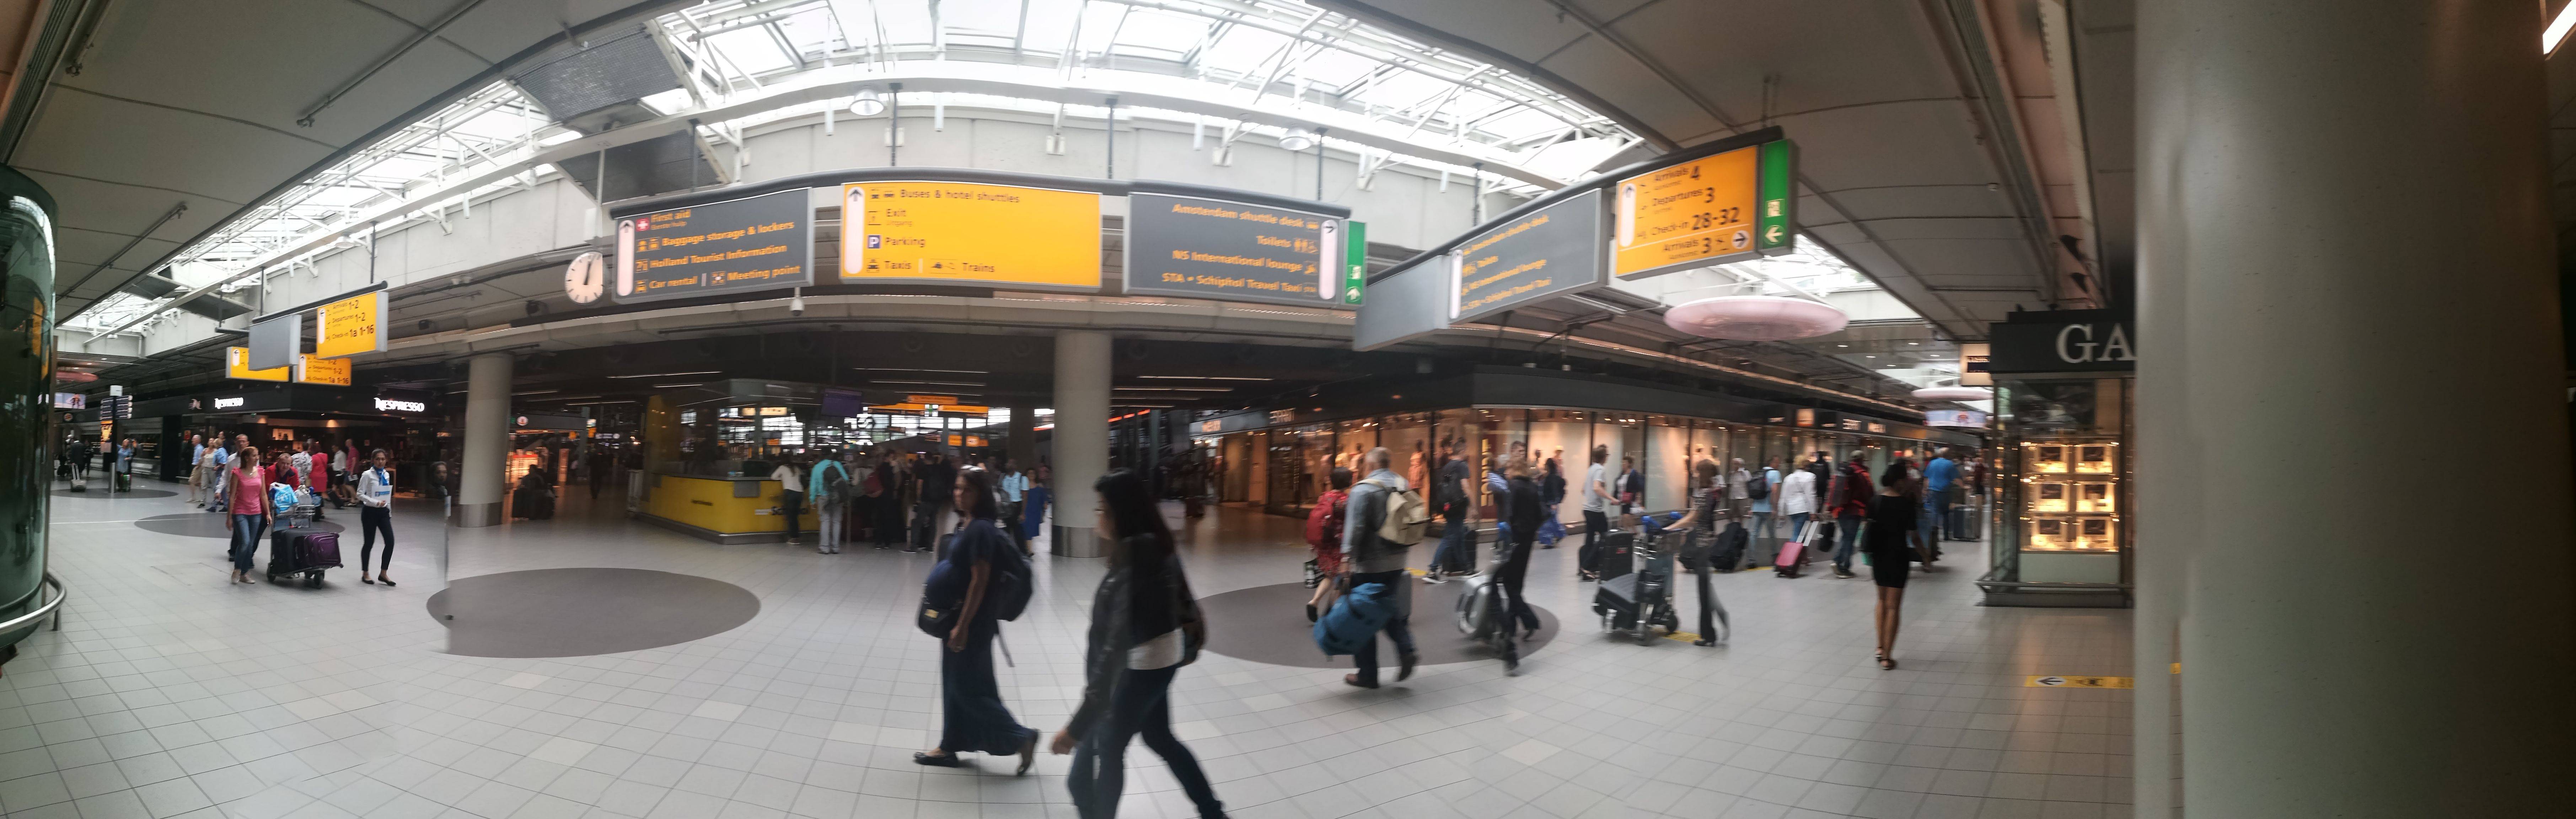 Большой гид по центру амстердама — как добраться, отели, транспорт, что посмотреть